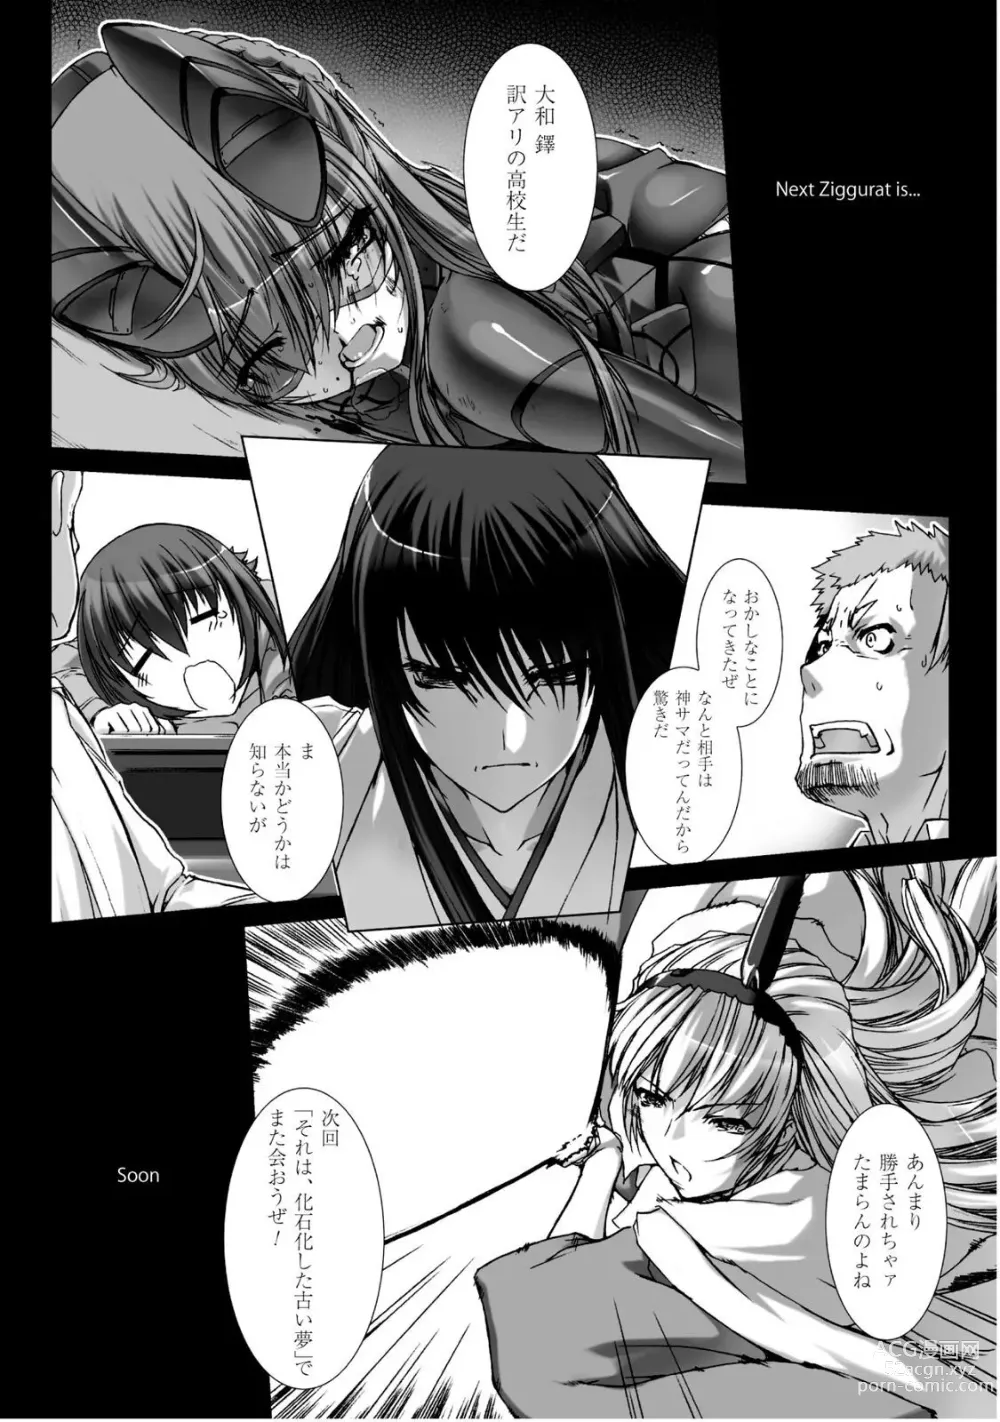 Page 192 of manga Ziggurat 5